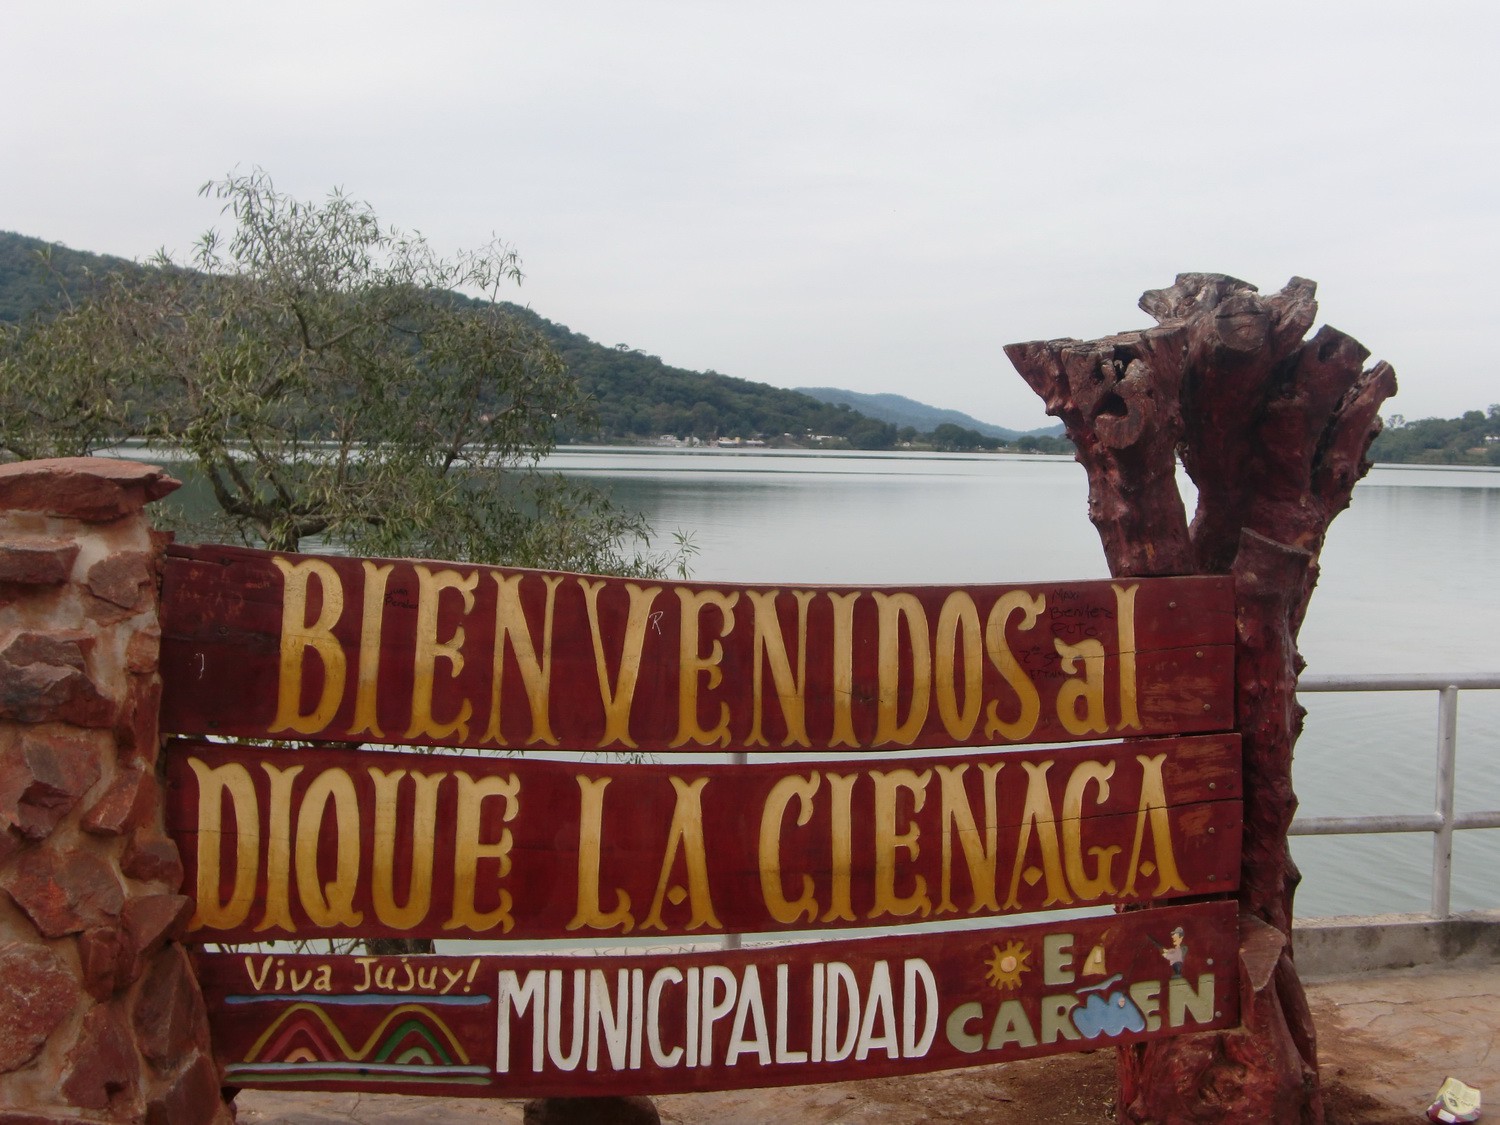 Welcome to the lake La Cienaga